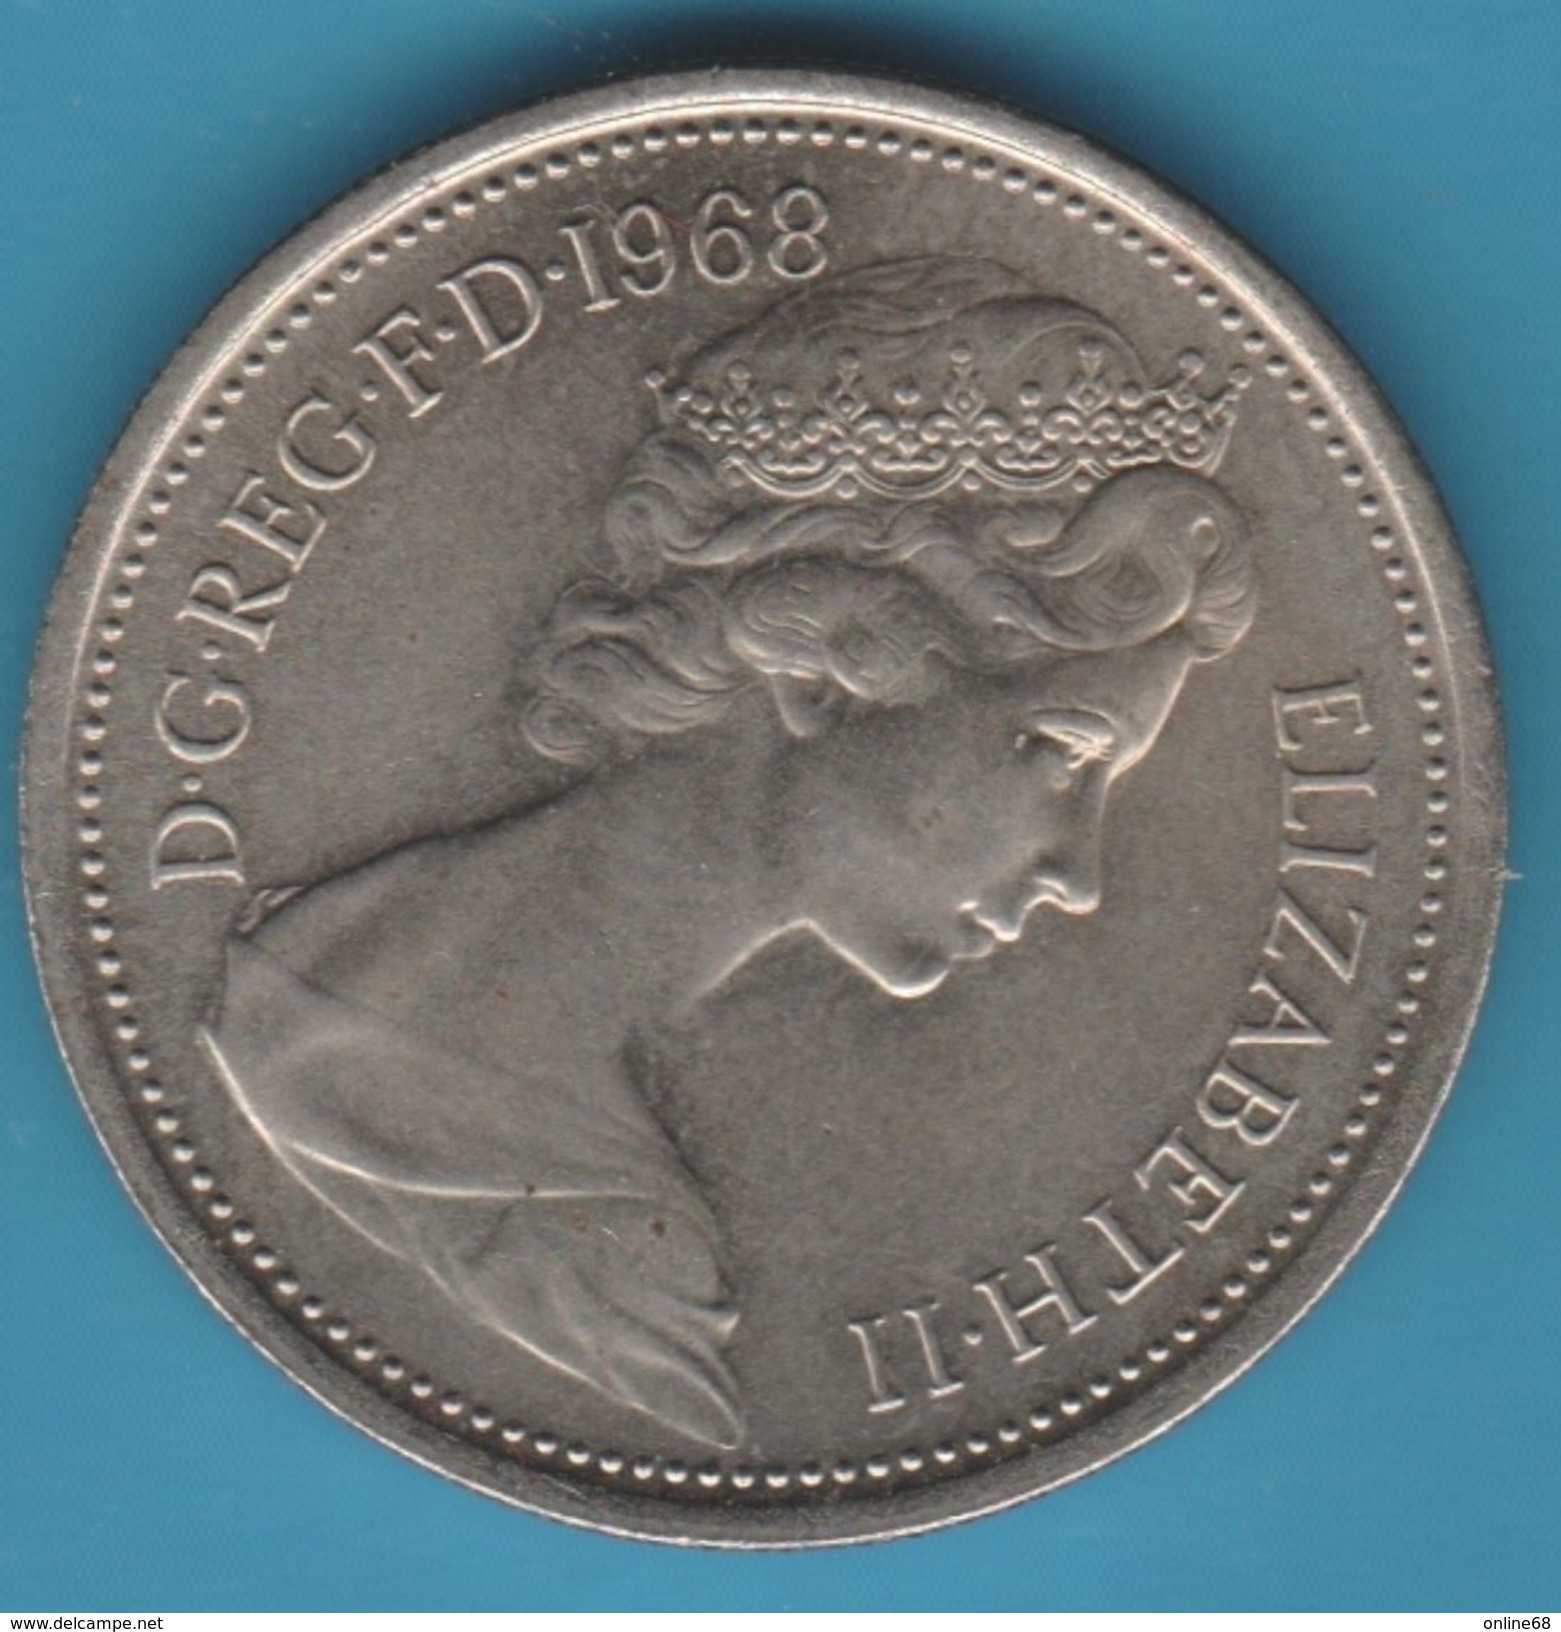 GB 5 NEW PENCE 1968 Elizabeth II - 5 Pence & 5 New Pence